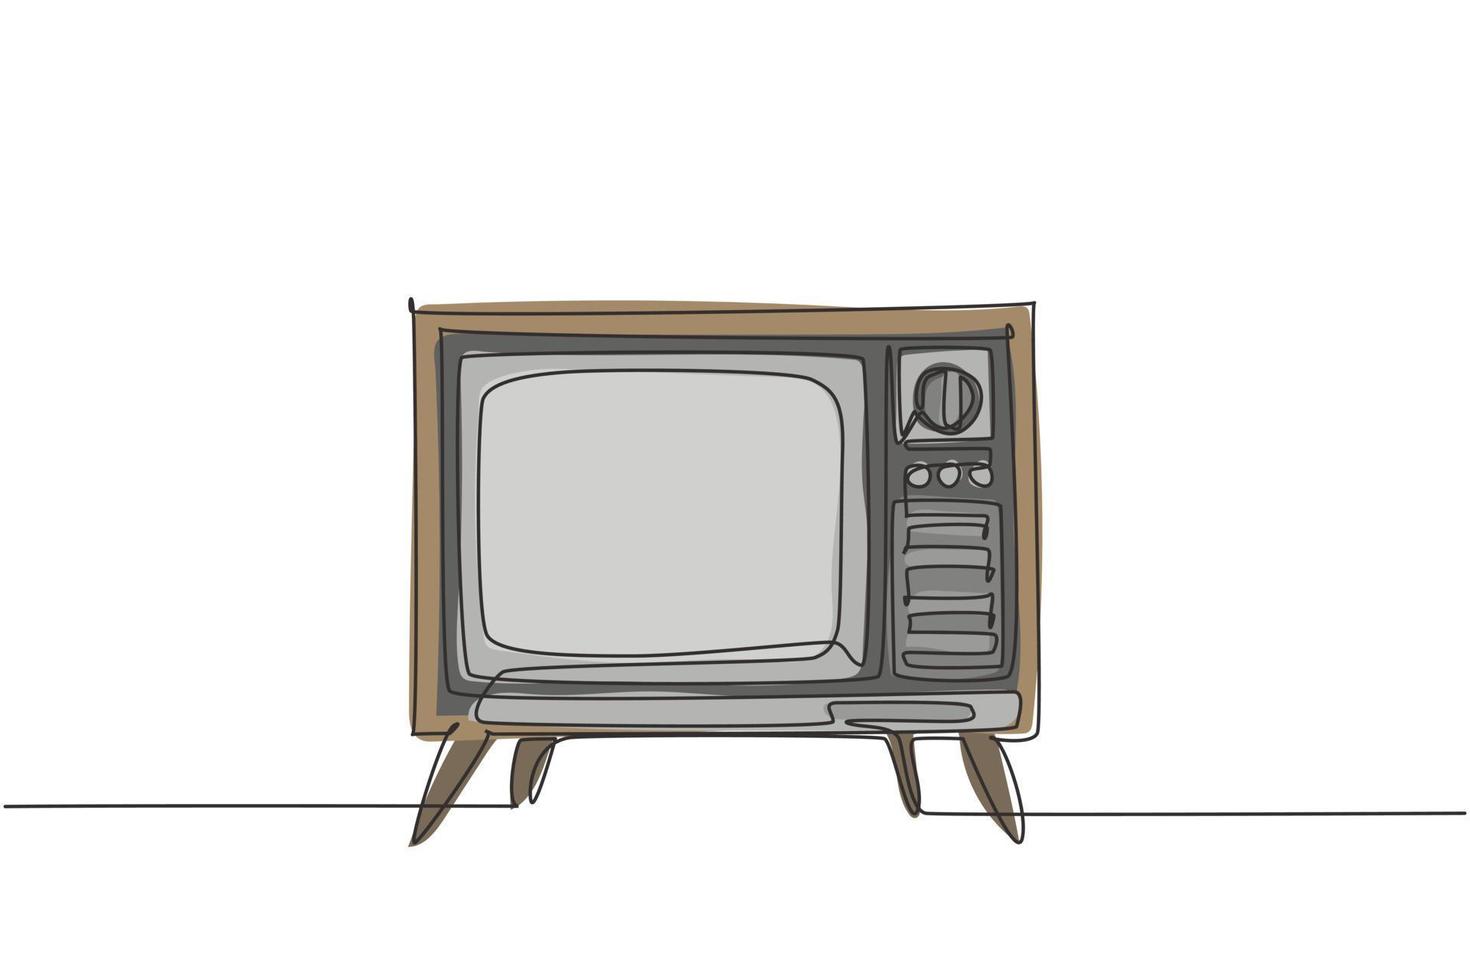 único desenho de linha contínua de uma tv retrô à moda antiga com caixa e perna de madeira. ilustração em vetor design gráfico antigo conceito de televisão analógica vintage